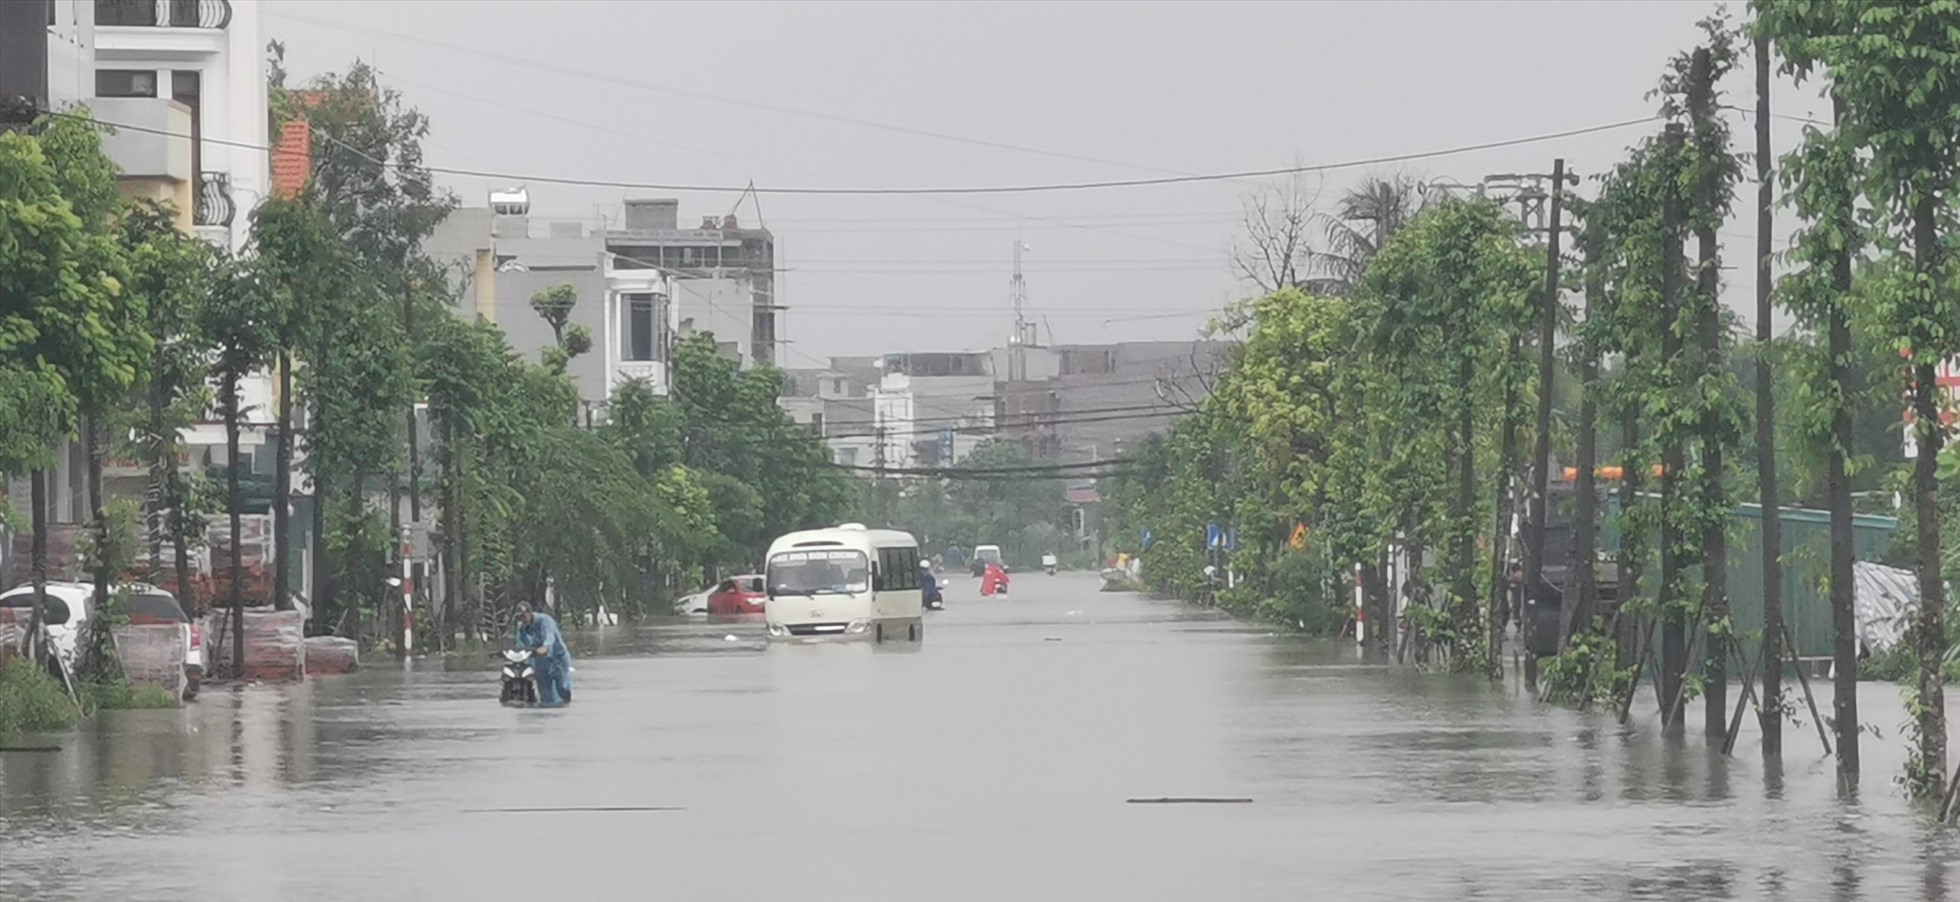 Khu vực Bãi Muối, phường Cao Thắng, thành phố Hạ Long (Quảng Ninh) ngập trong biển nước. Ảnh: Đoàn Hưng